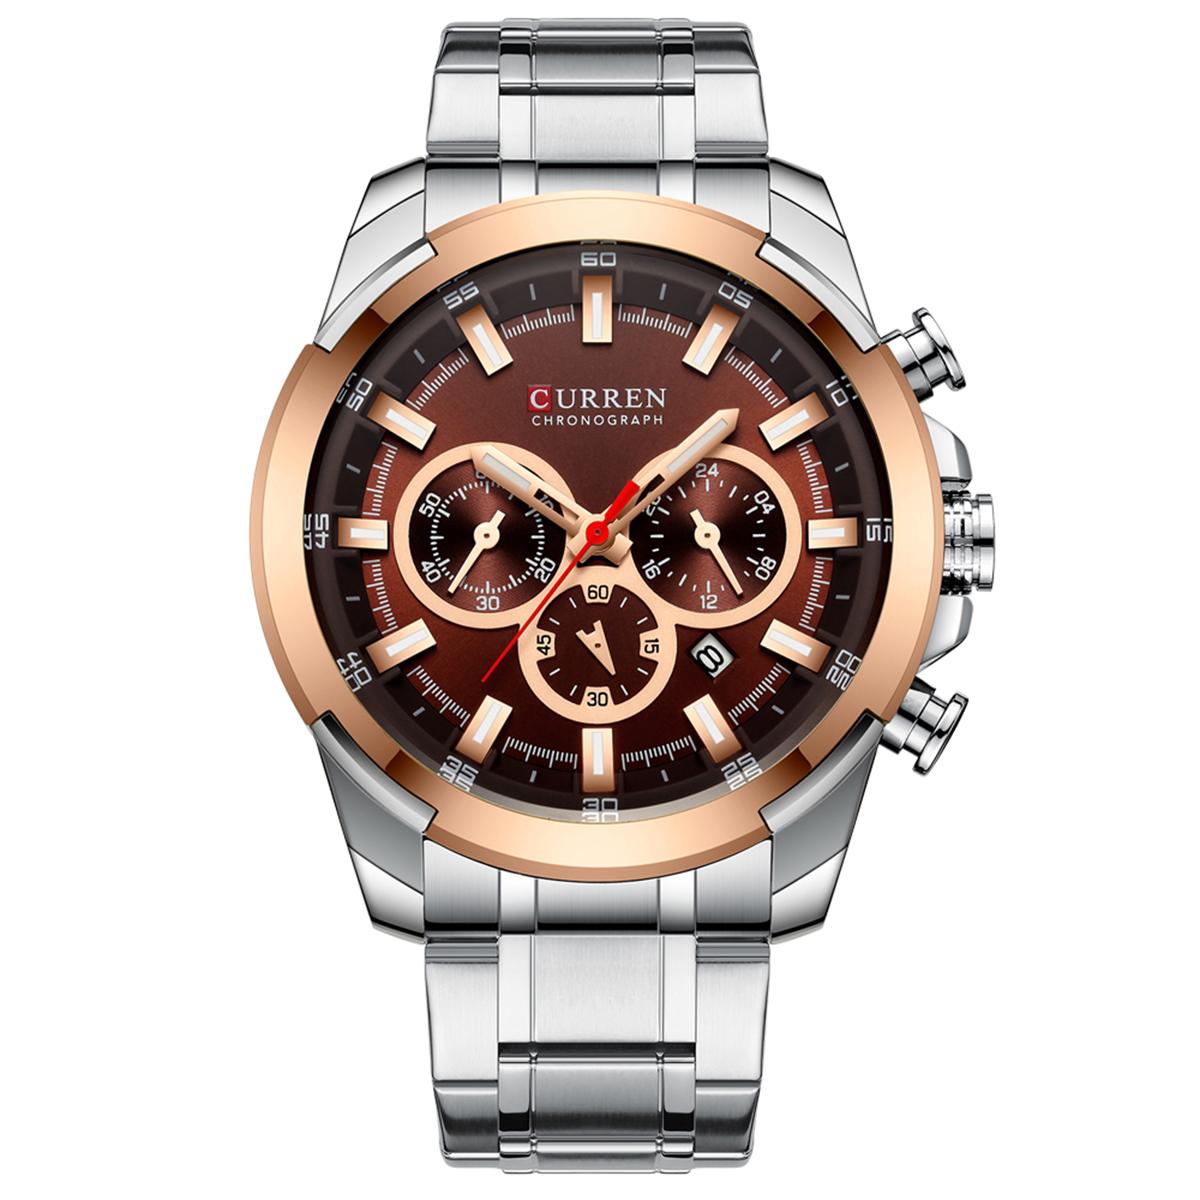 Đồng hồ đeo tay Quartz Man CURREN 8361 dành cho nam Đồng hồ có lịch chỉ ngày dạ quang chống thấm nước